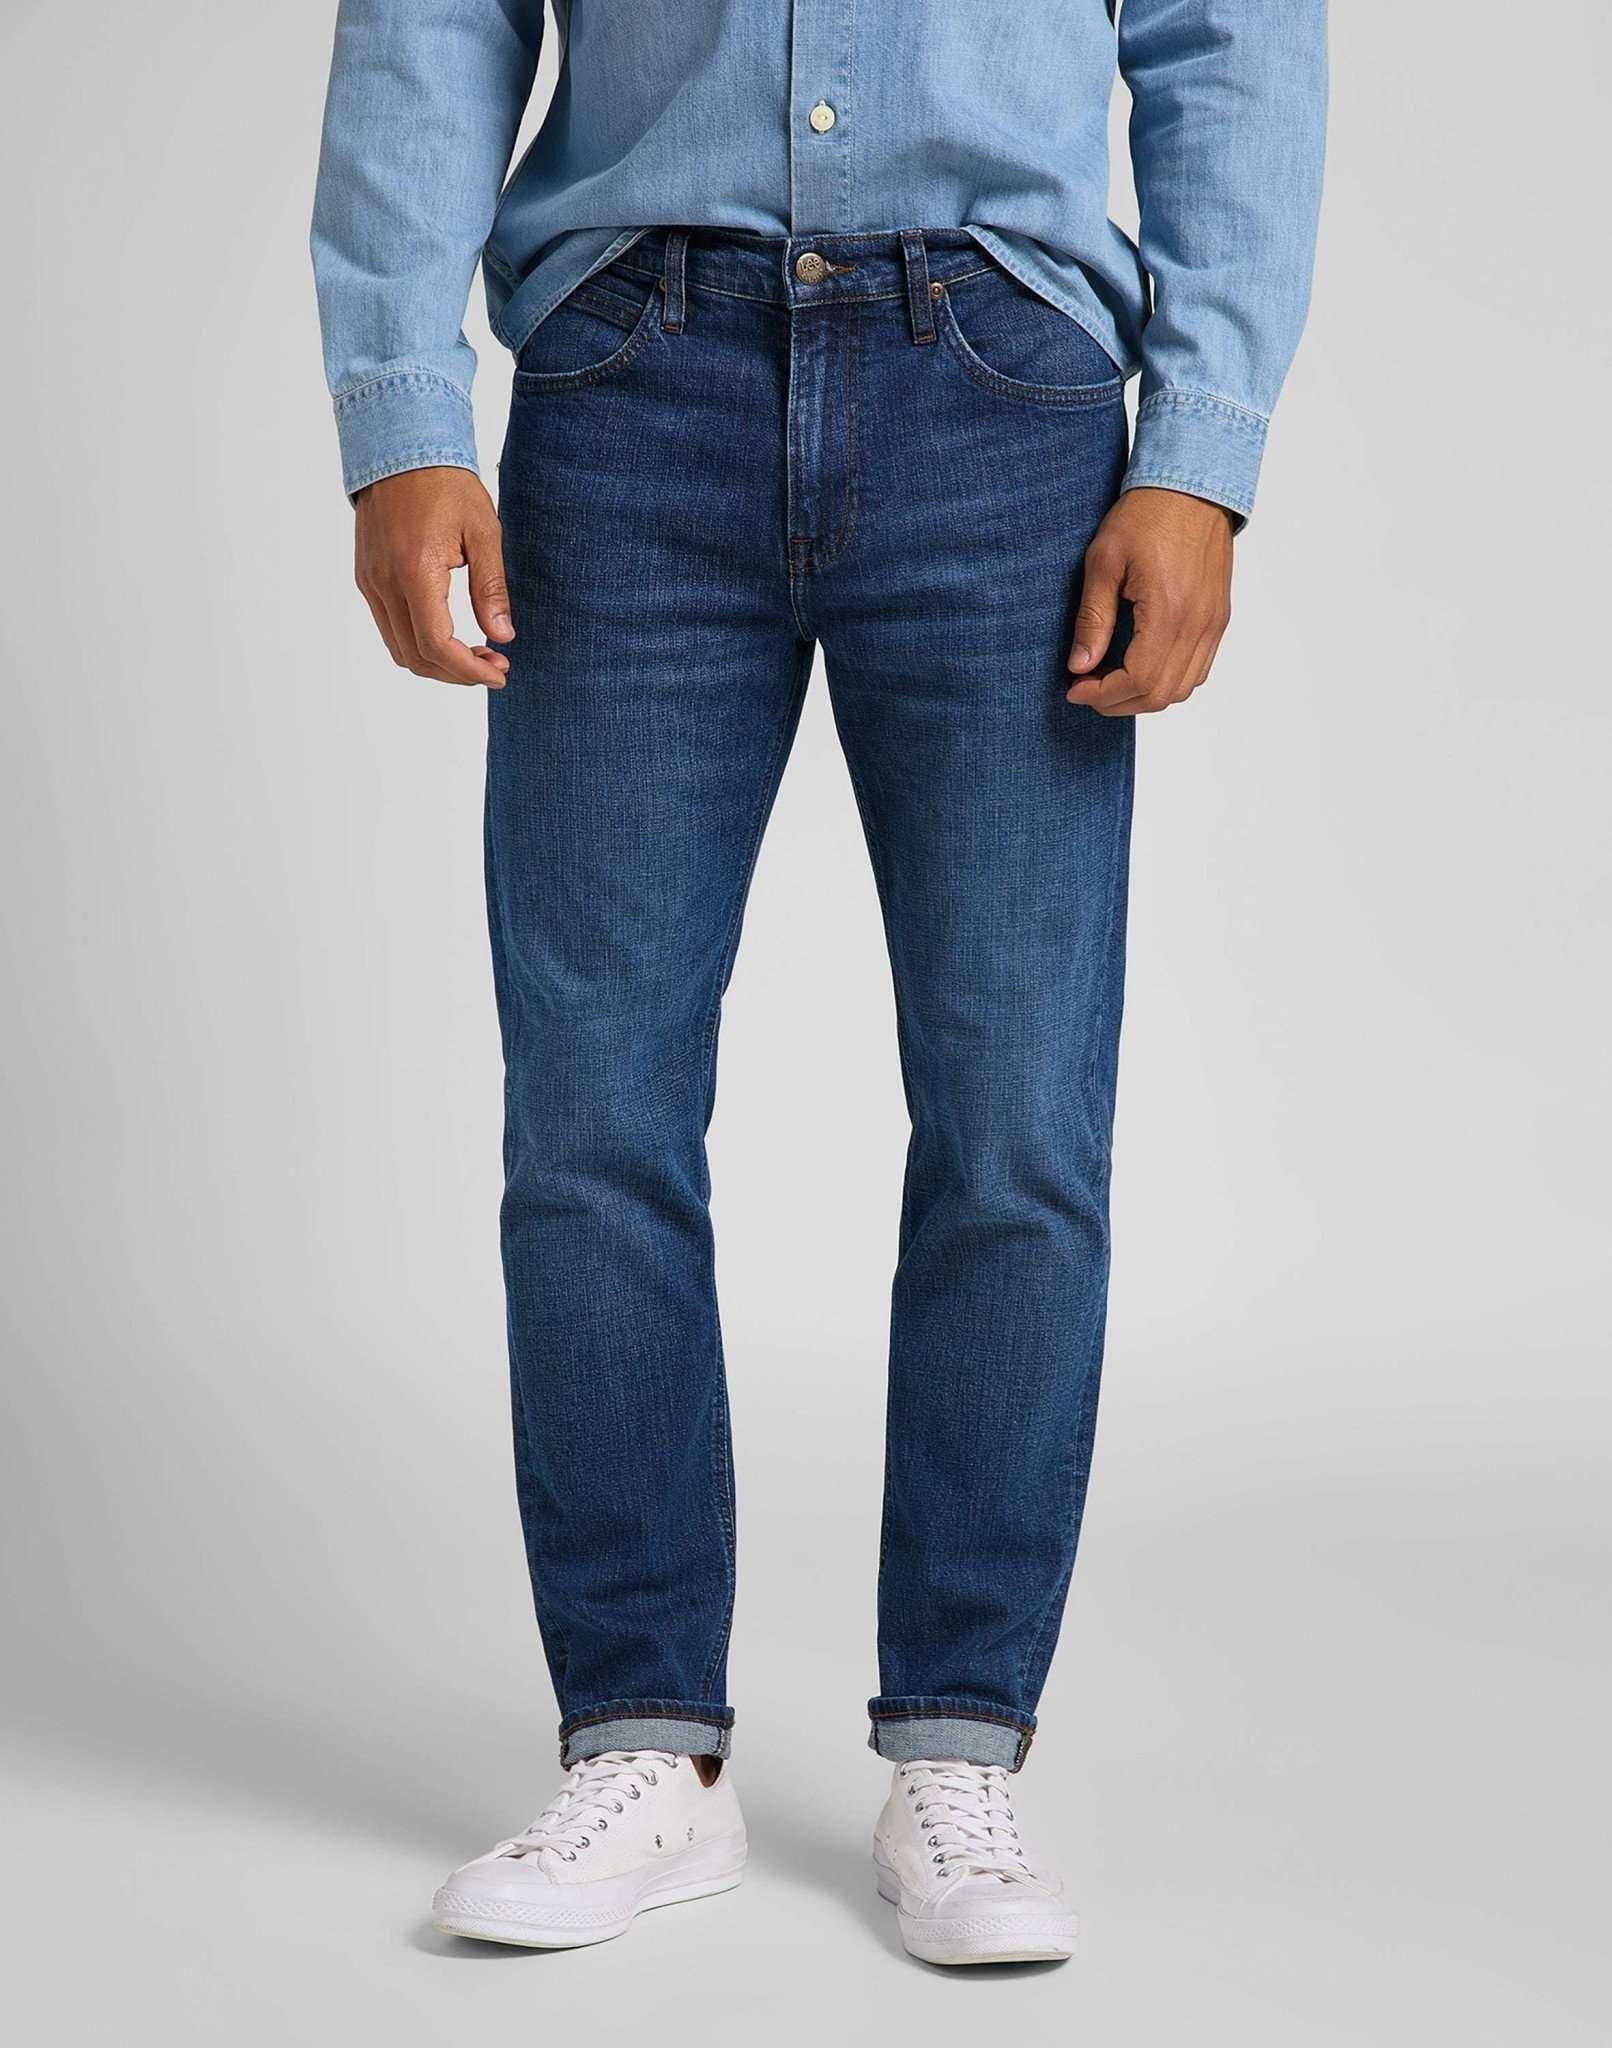 Jeans Straight Leg Austin Herren Blau Denim L30/W32 von Lee